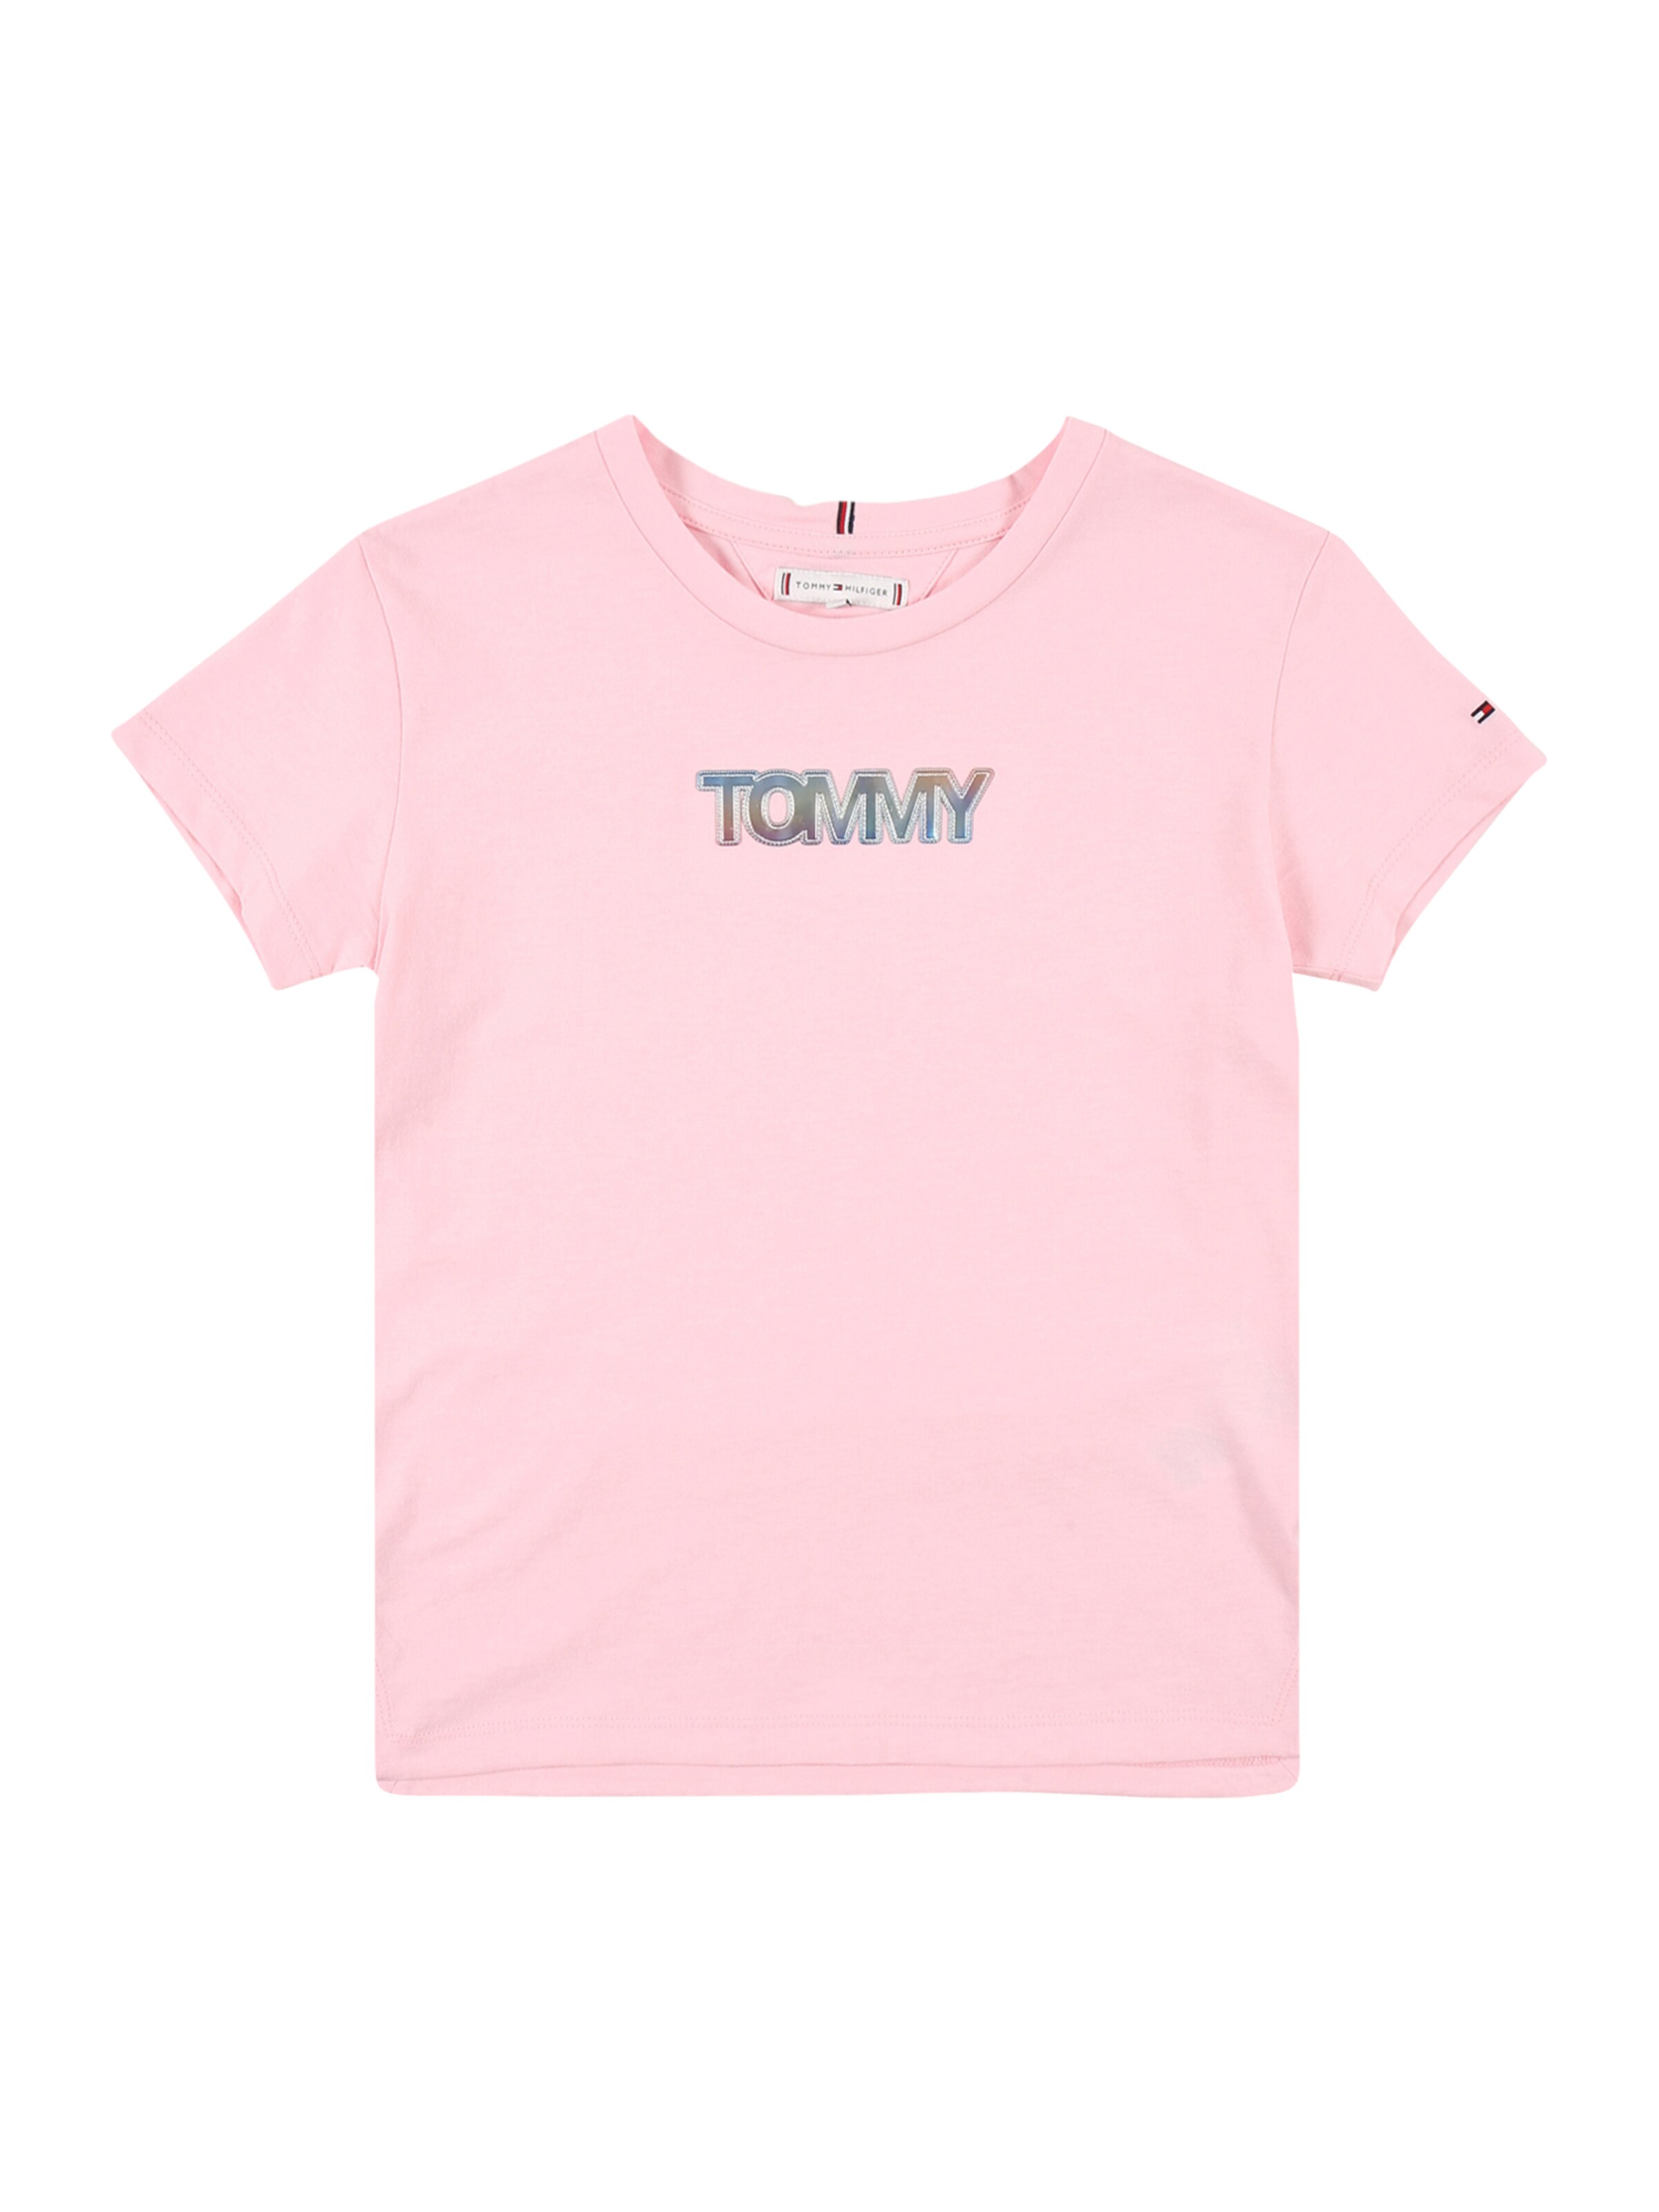 light pink tommy hilfiger shirt